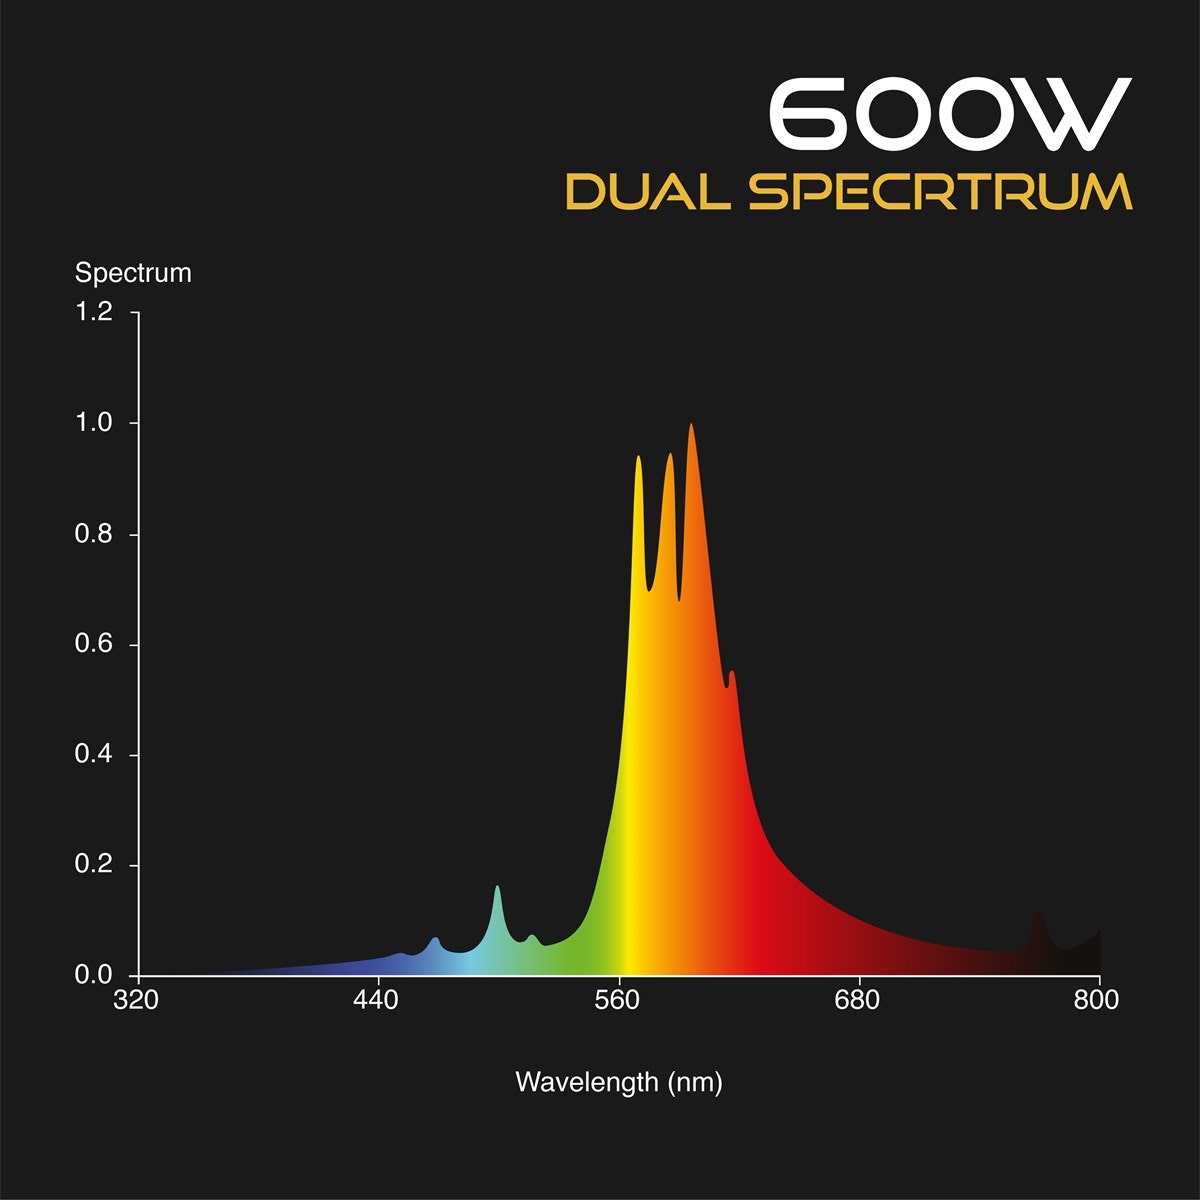 Omega 600w HPS Spectrum